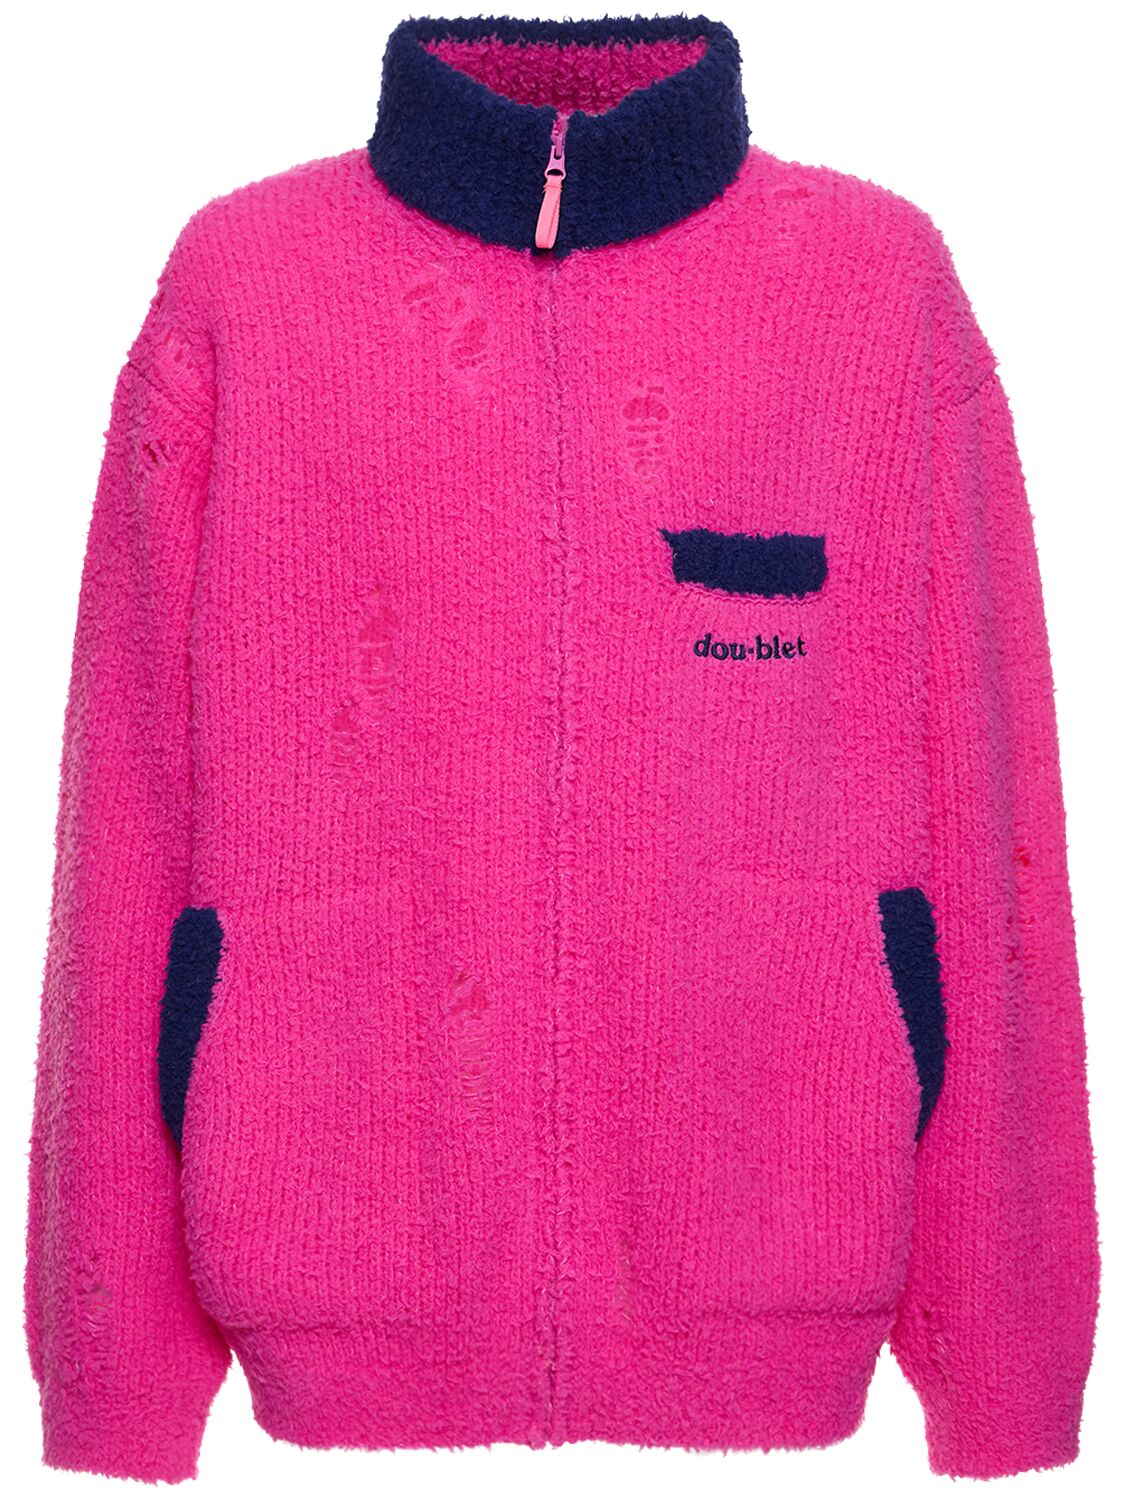 Doublet Wool Blend Knit Jacket In Neon Pink